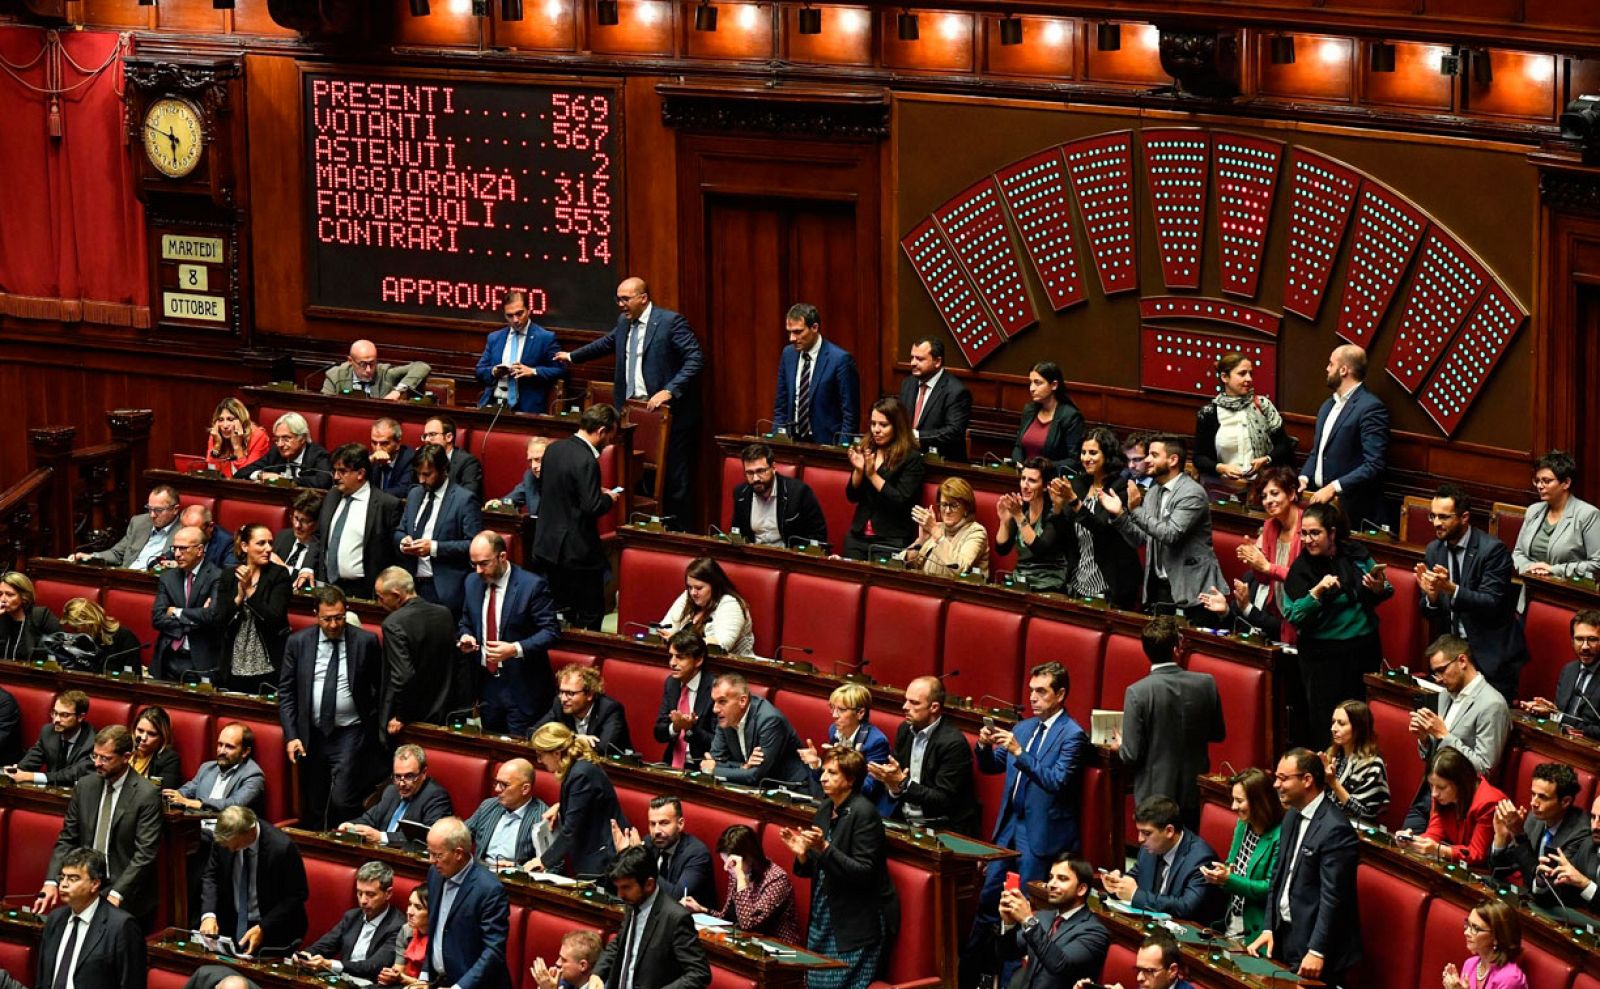 La ley fue aprobada en la Cámara de los Diputados por 553 votos a favor, 14 en contra y 2 abstenciones